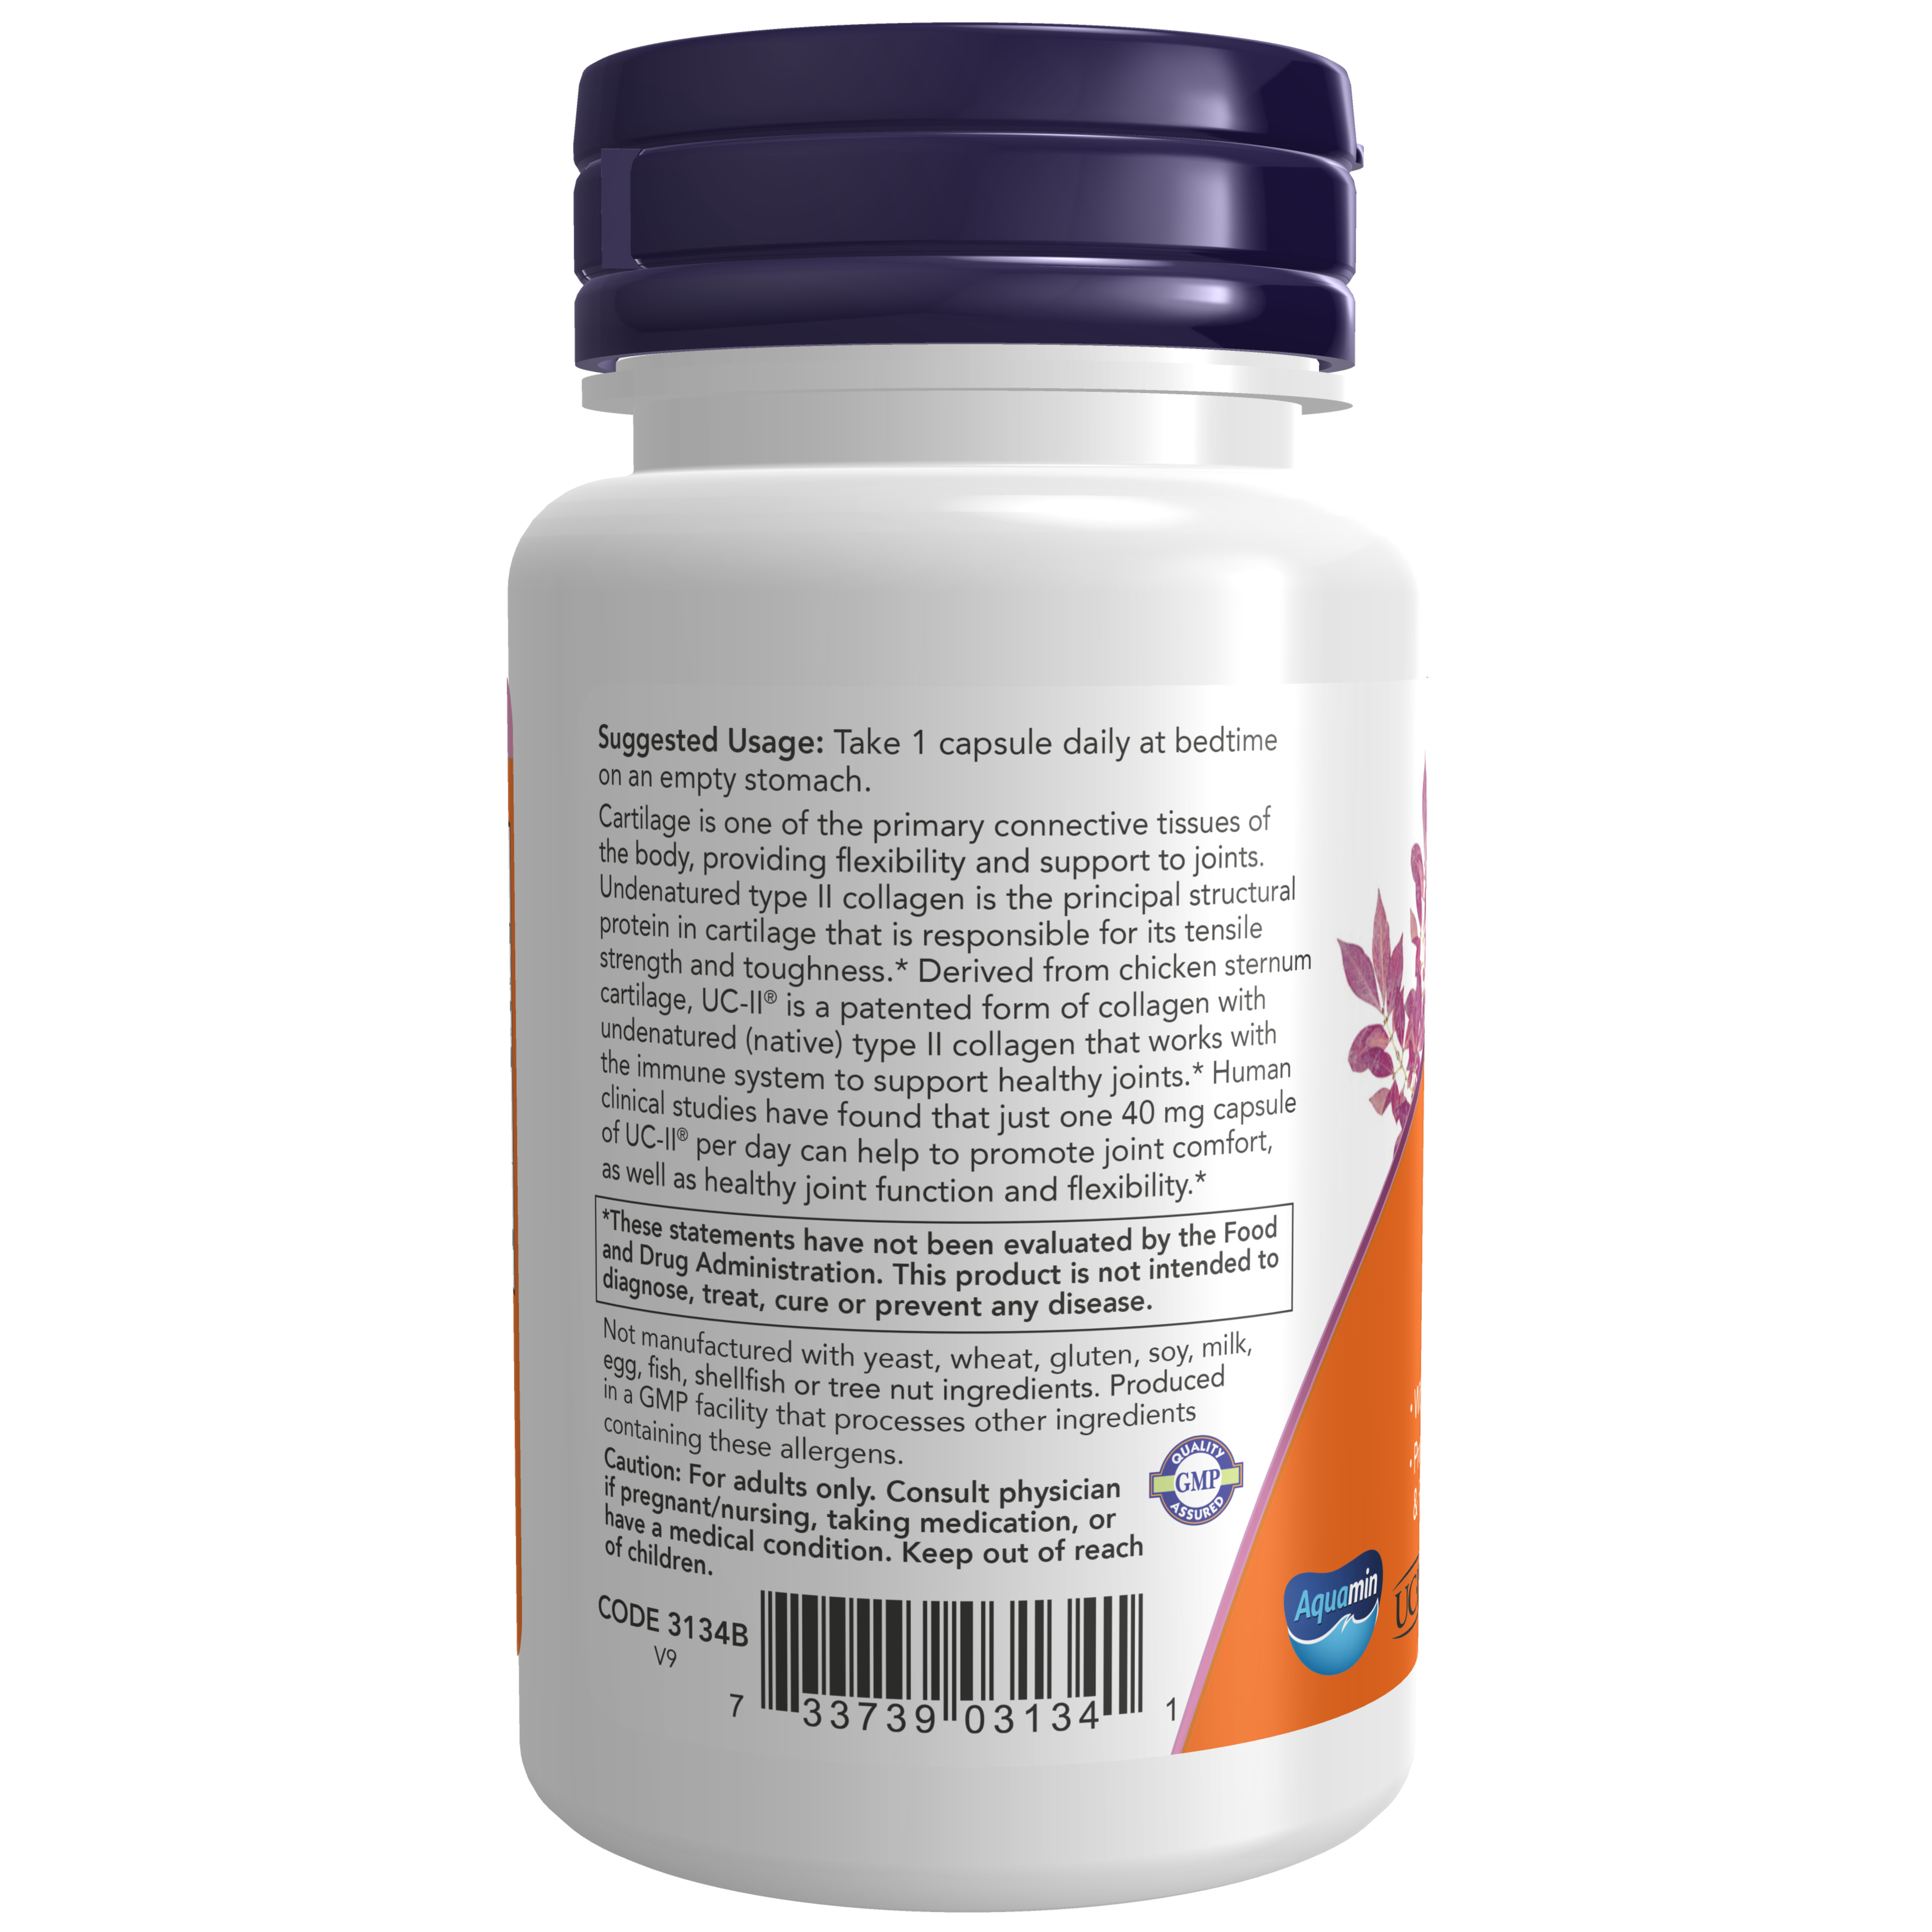 UC-II Type II Collagel 40 mg 60 VCAPS hãng Now foods USA Cung cấp dưỡng chất, bảo tồn sụn khớp hư hại, giamr thoái hóa sụn khớp